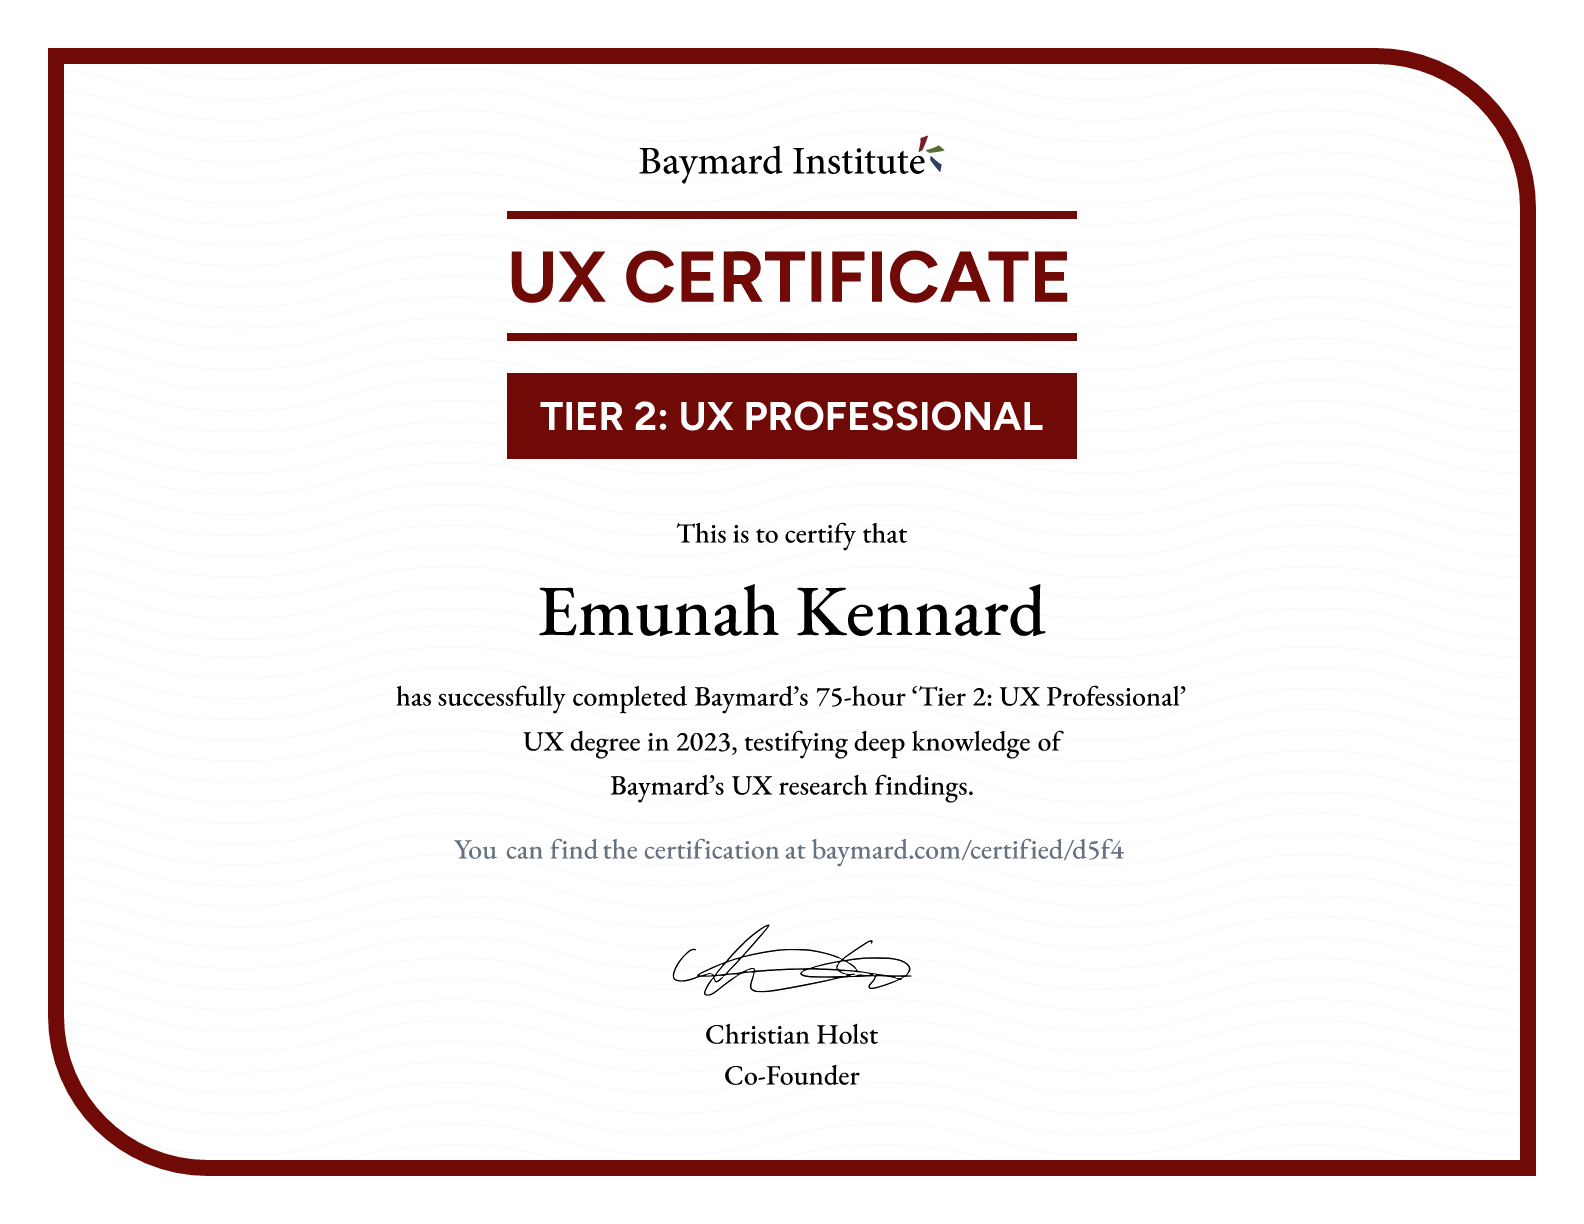 Emunah Kennard’s certificate